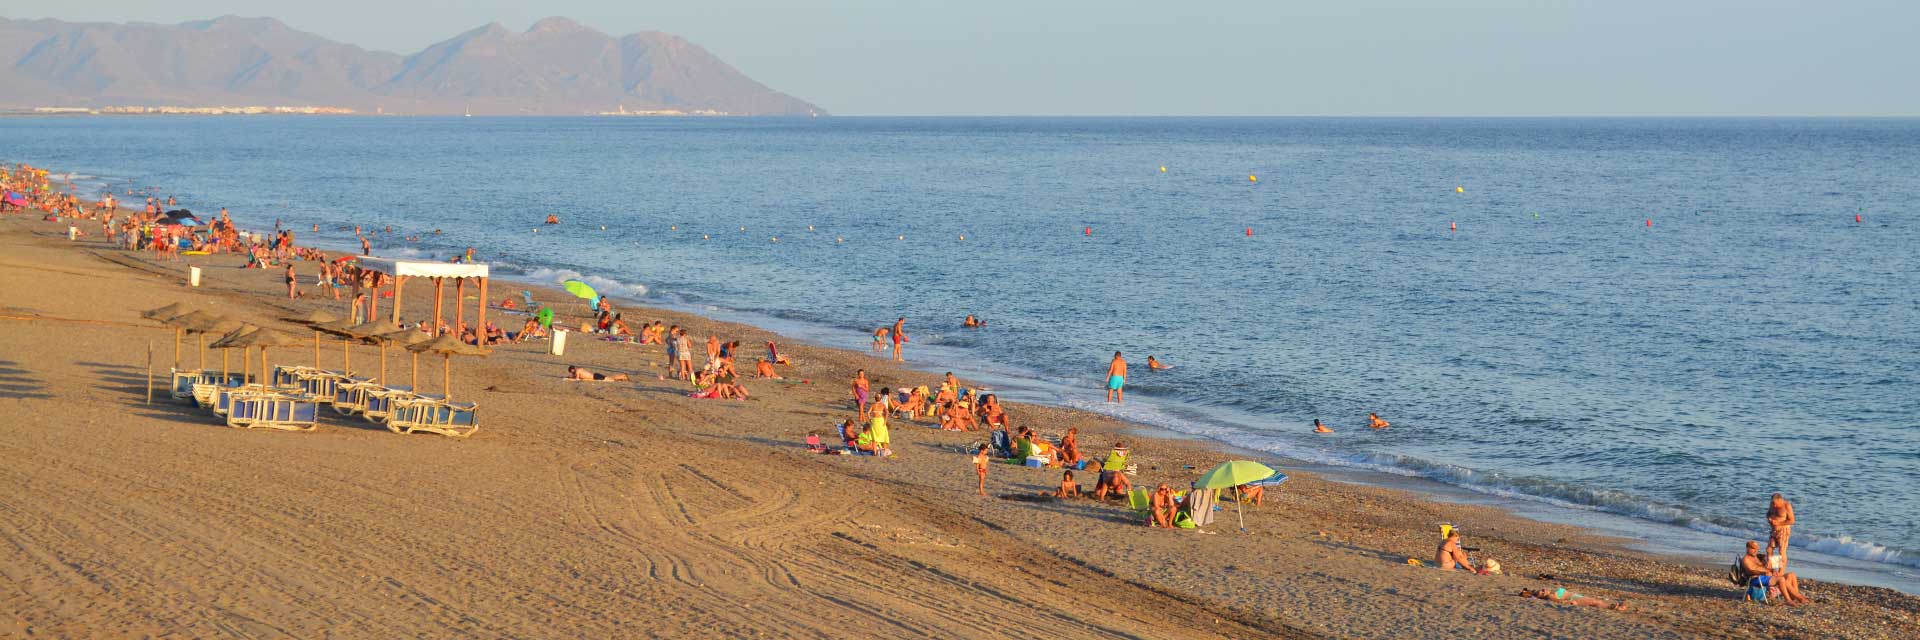 Playa El Toyo y Retamar ▶ Costa de Almería